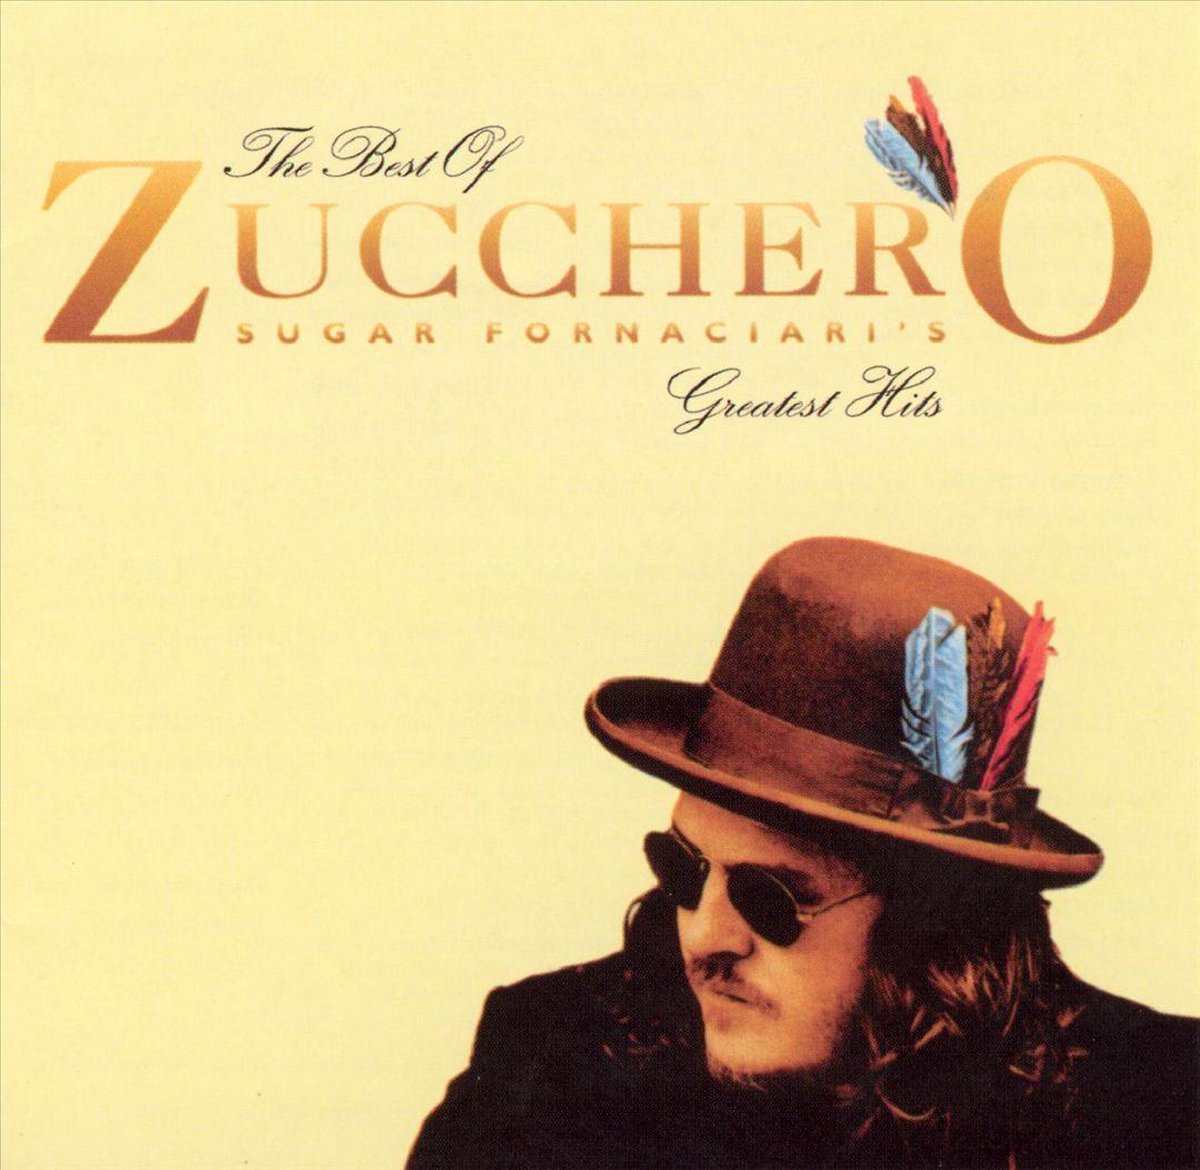 Best of Zucchero: Sugar Fornaciari's Greatest Hits - Zucchero